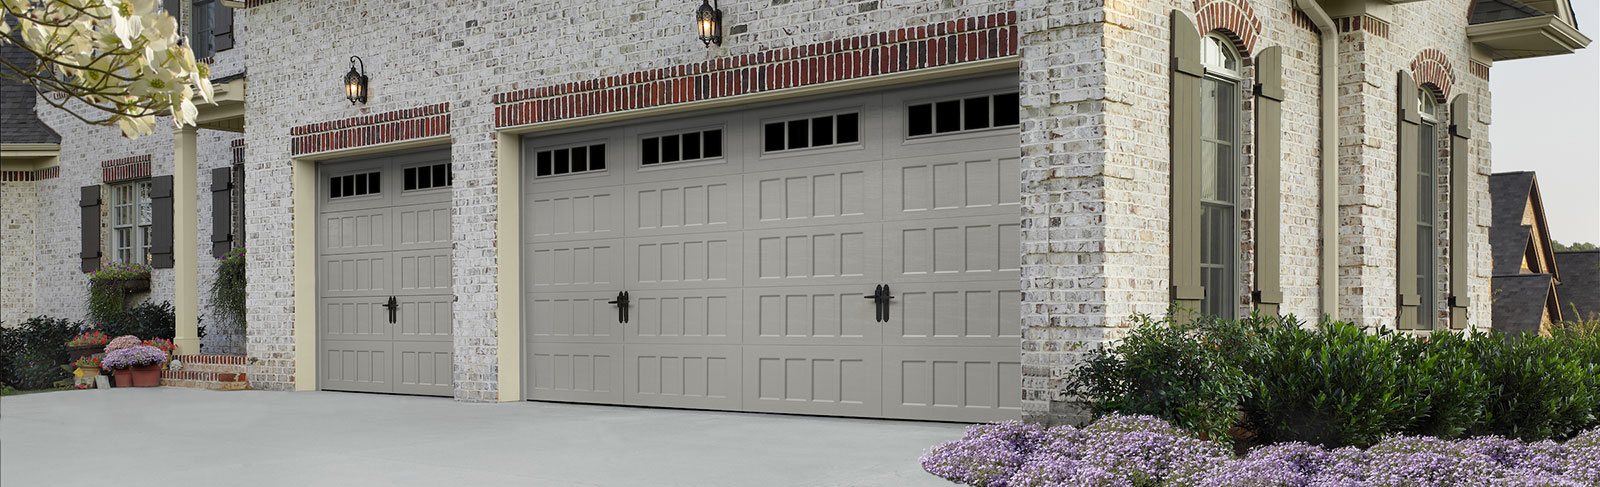 Advanced Door Ogden Utah Garage Doors garage doors fail